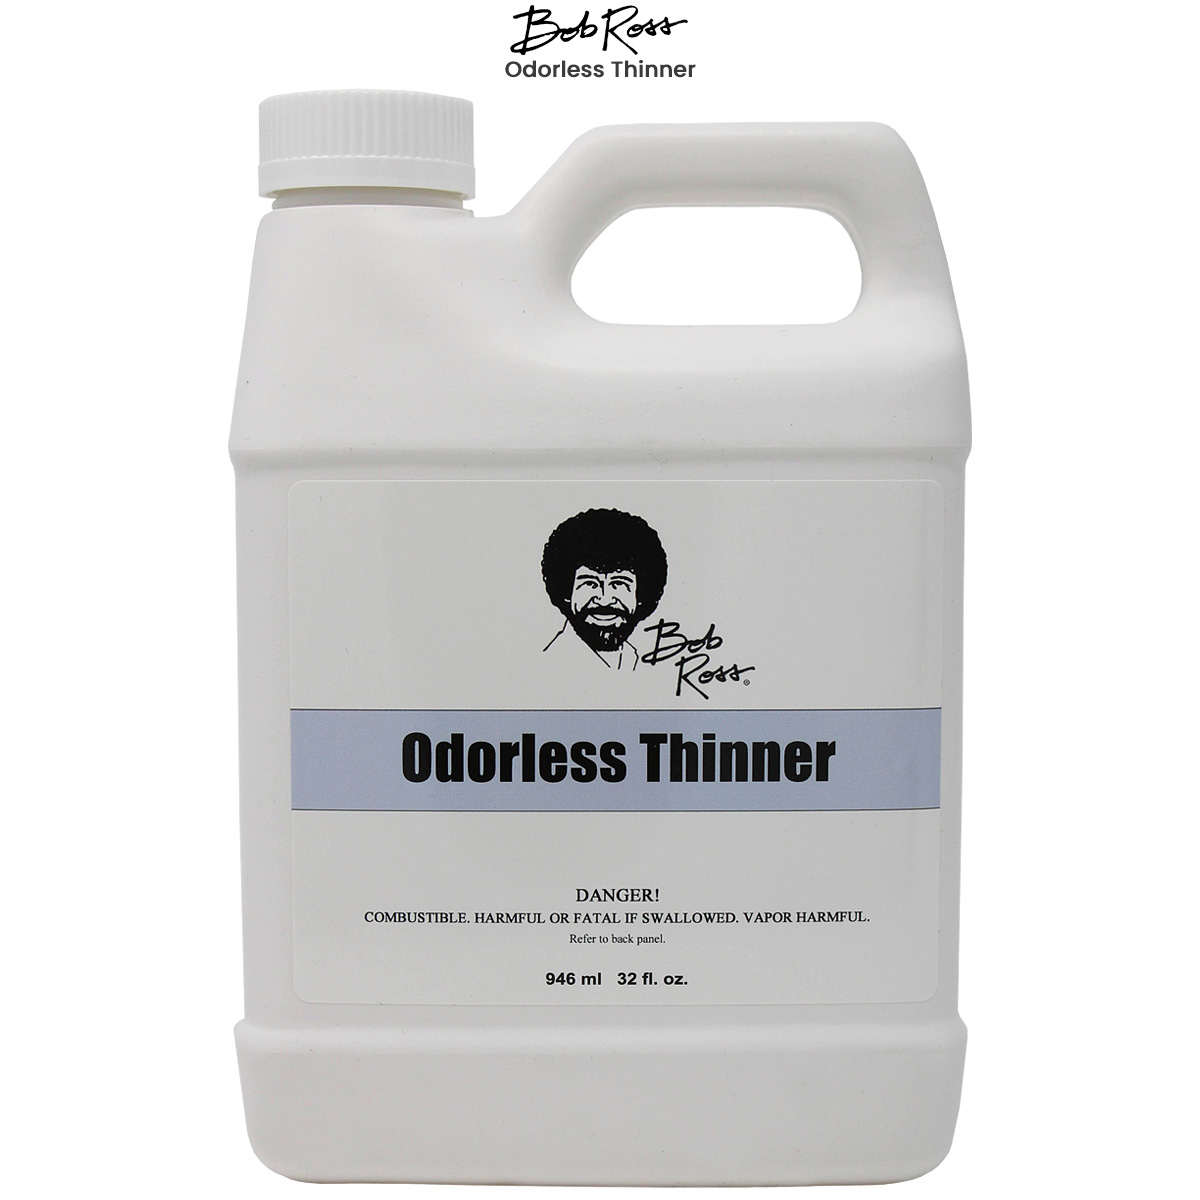 Weber Odorless Turpenoid Artist Paint Thinner and Cleaner 946ml (32 Fl Oz)  Bottle 1 Each 1 Quart (Pack of 1)